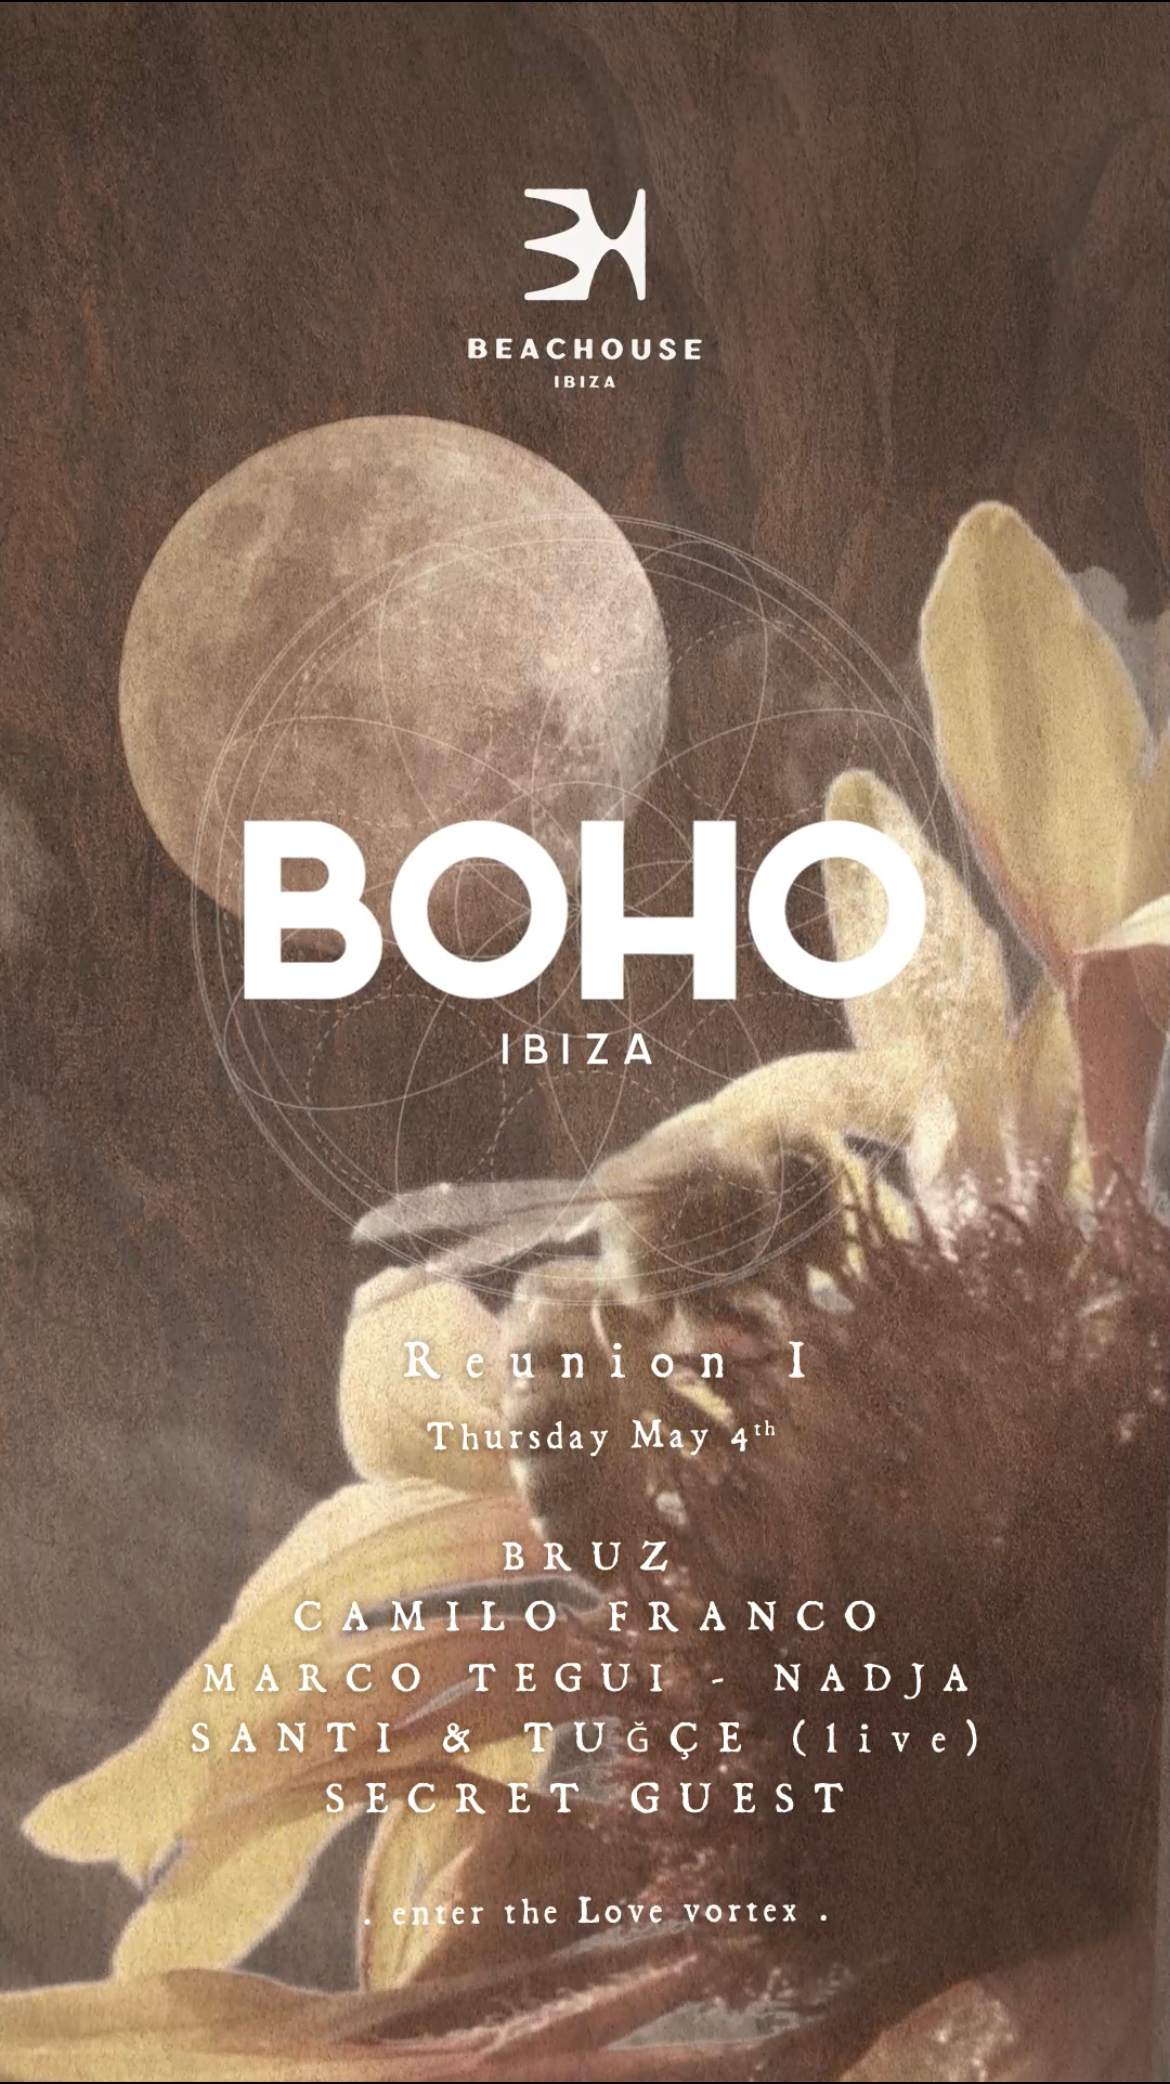 BOHO Experience Ibiza - Reunion I - フライヤー表